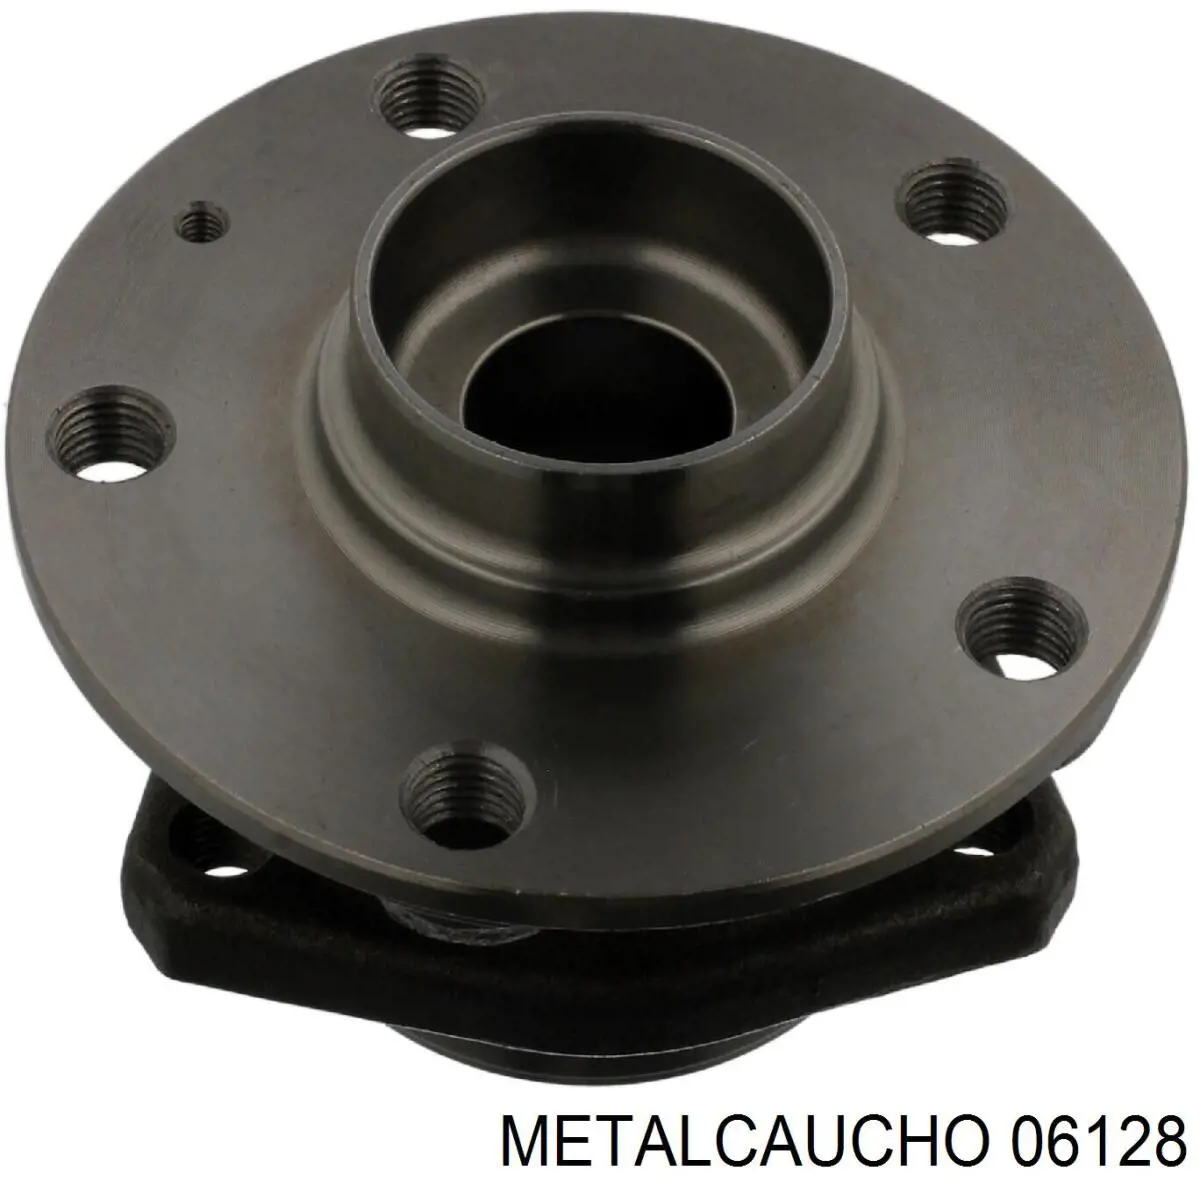 06128 Metalcaucho цилиндр сцепления рабочий